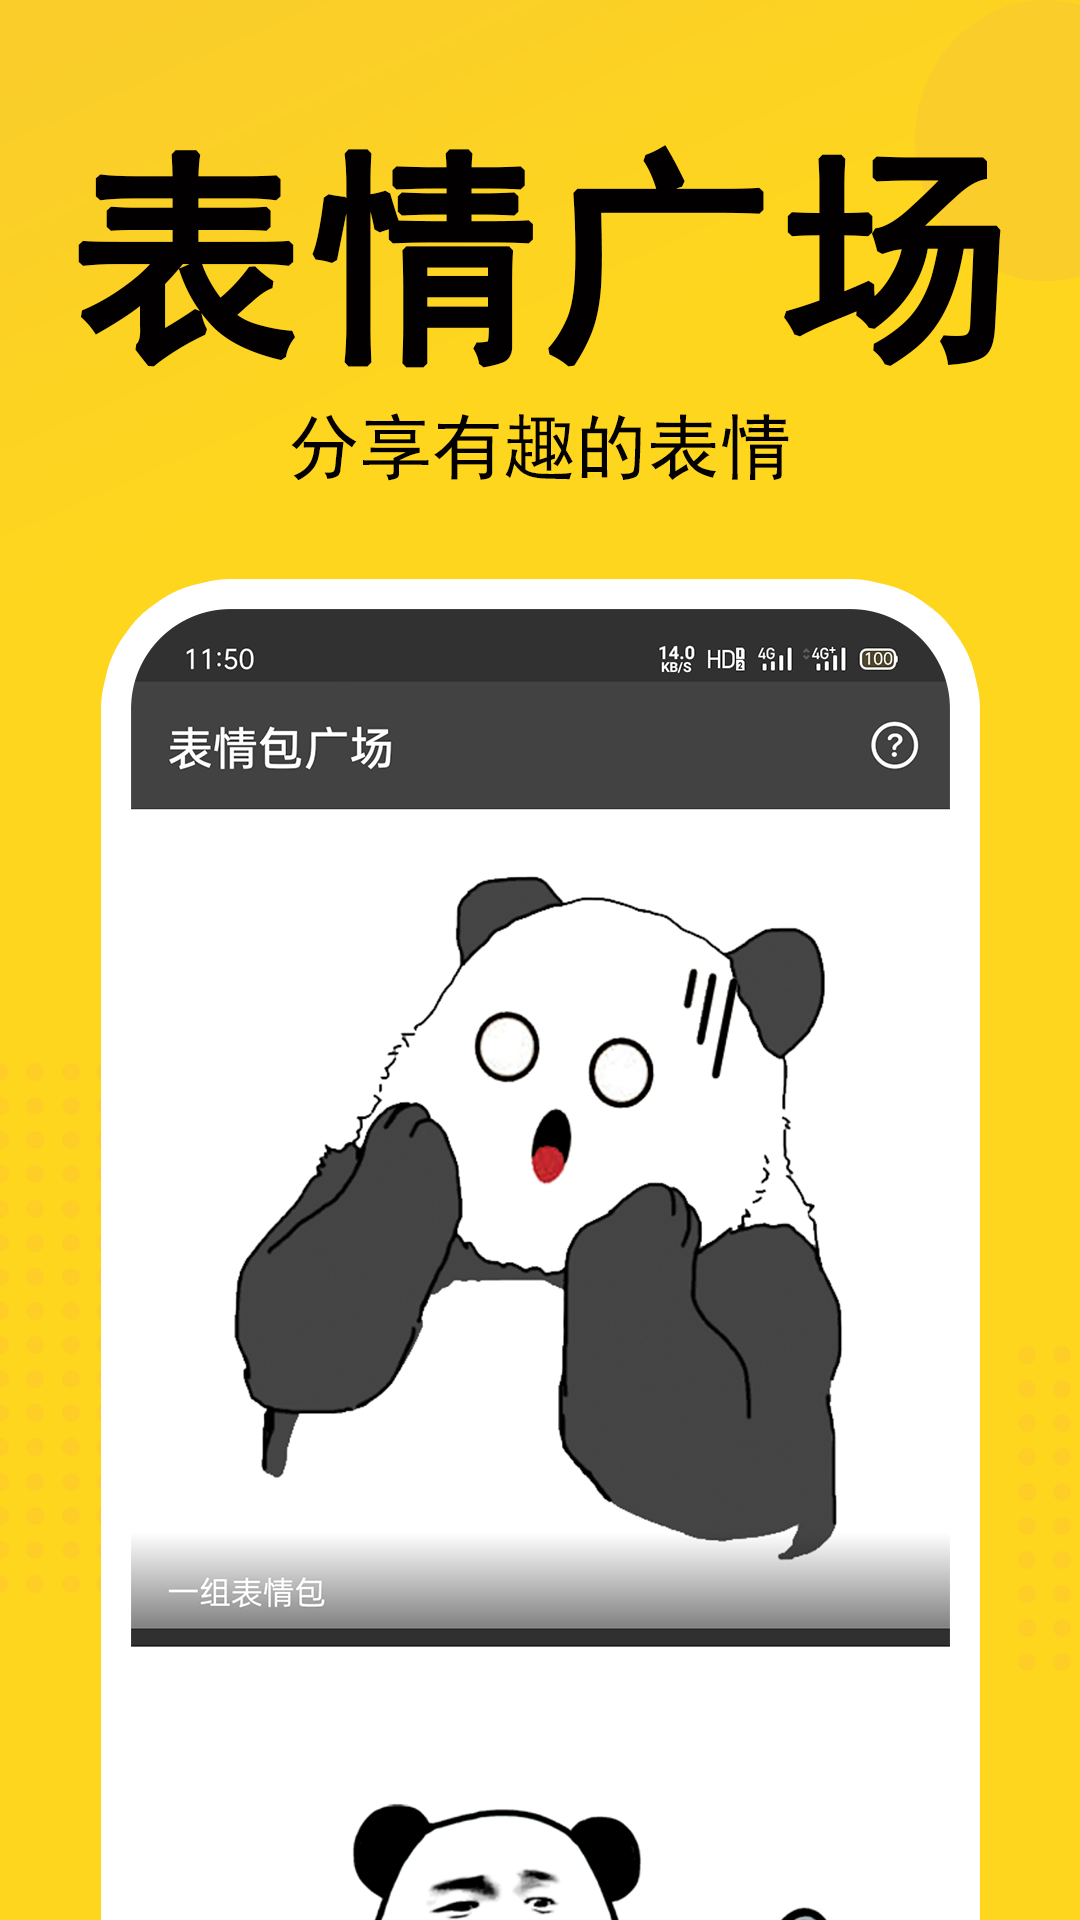 熊猫头表情包生成器 截图